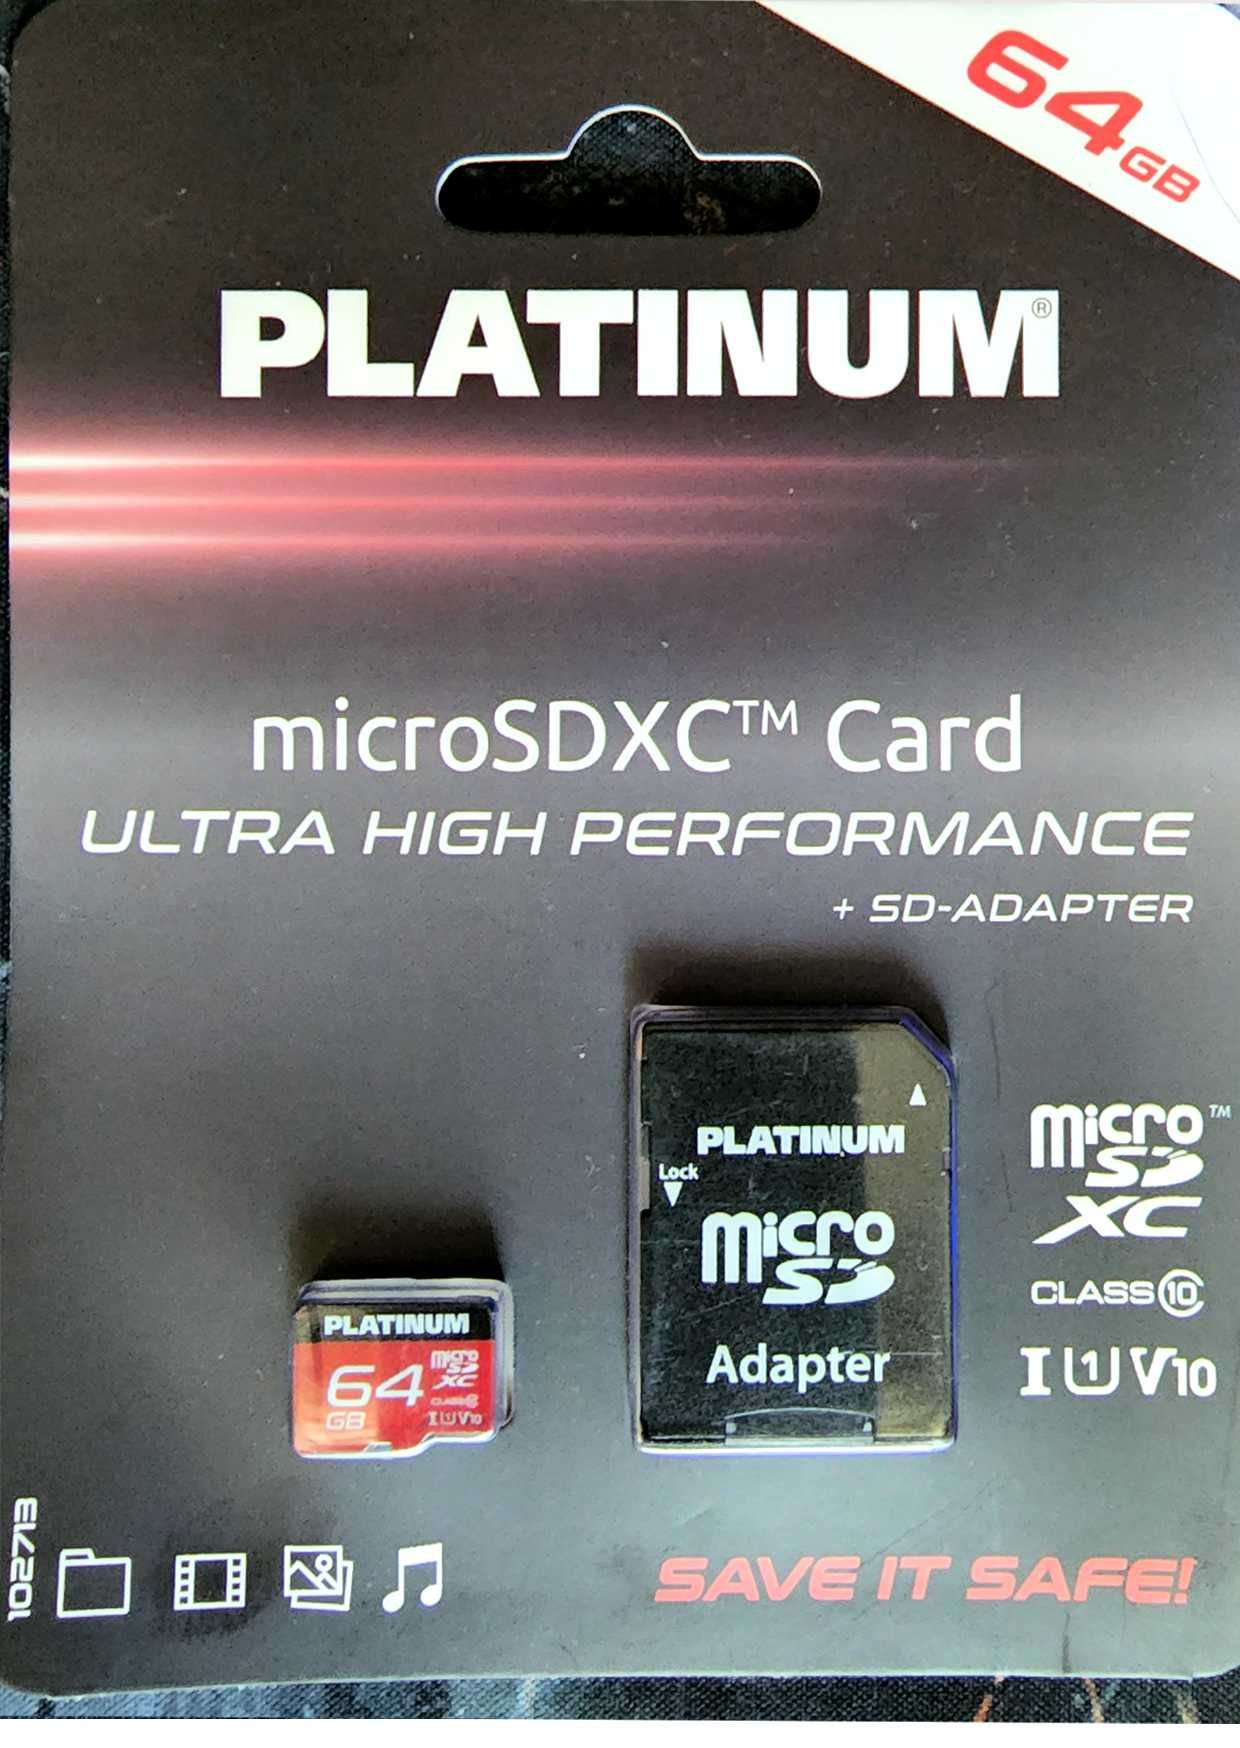 Platinum 64GB MicroSDXC